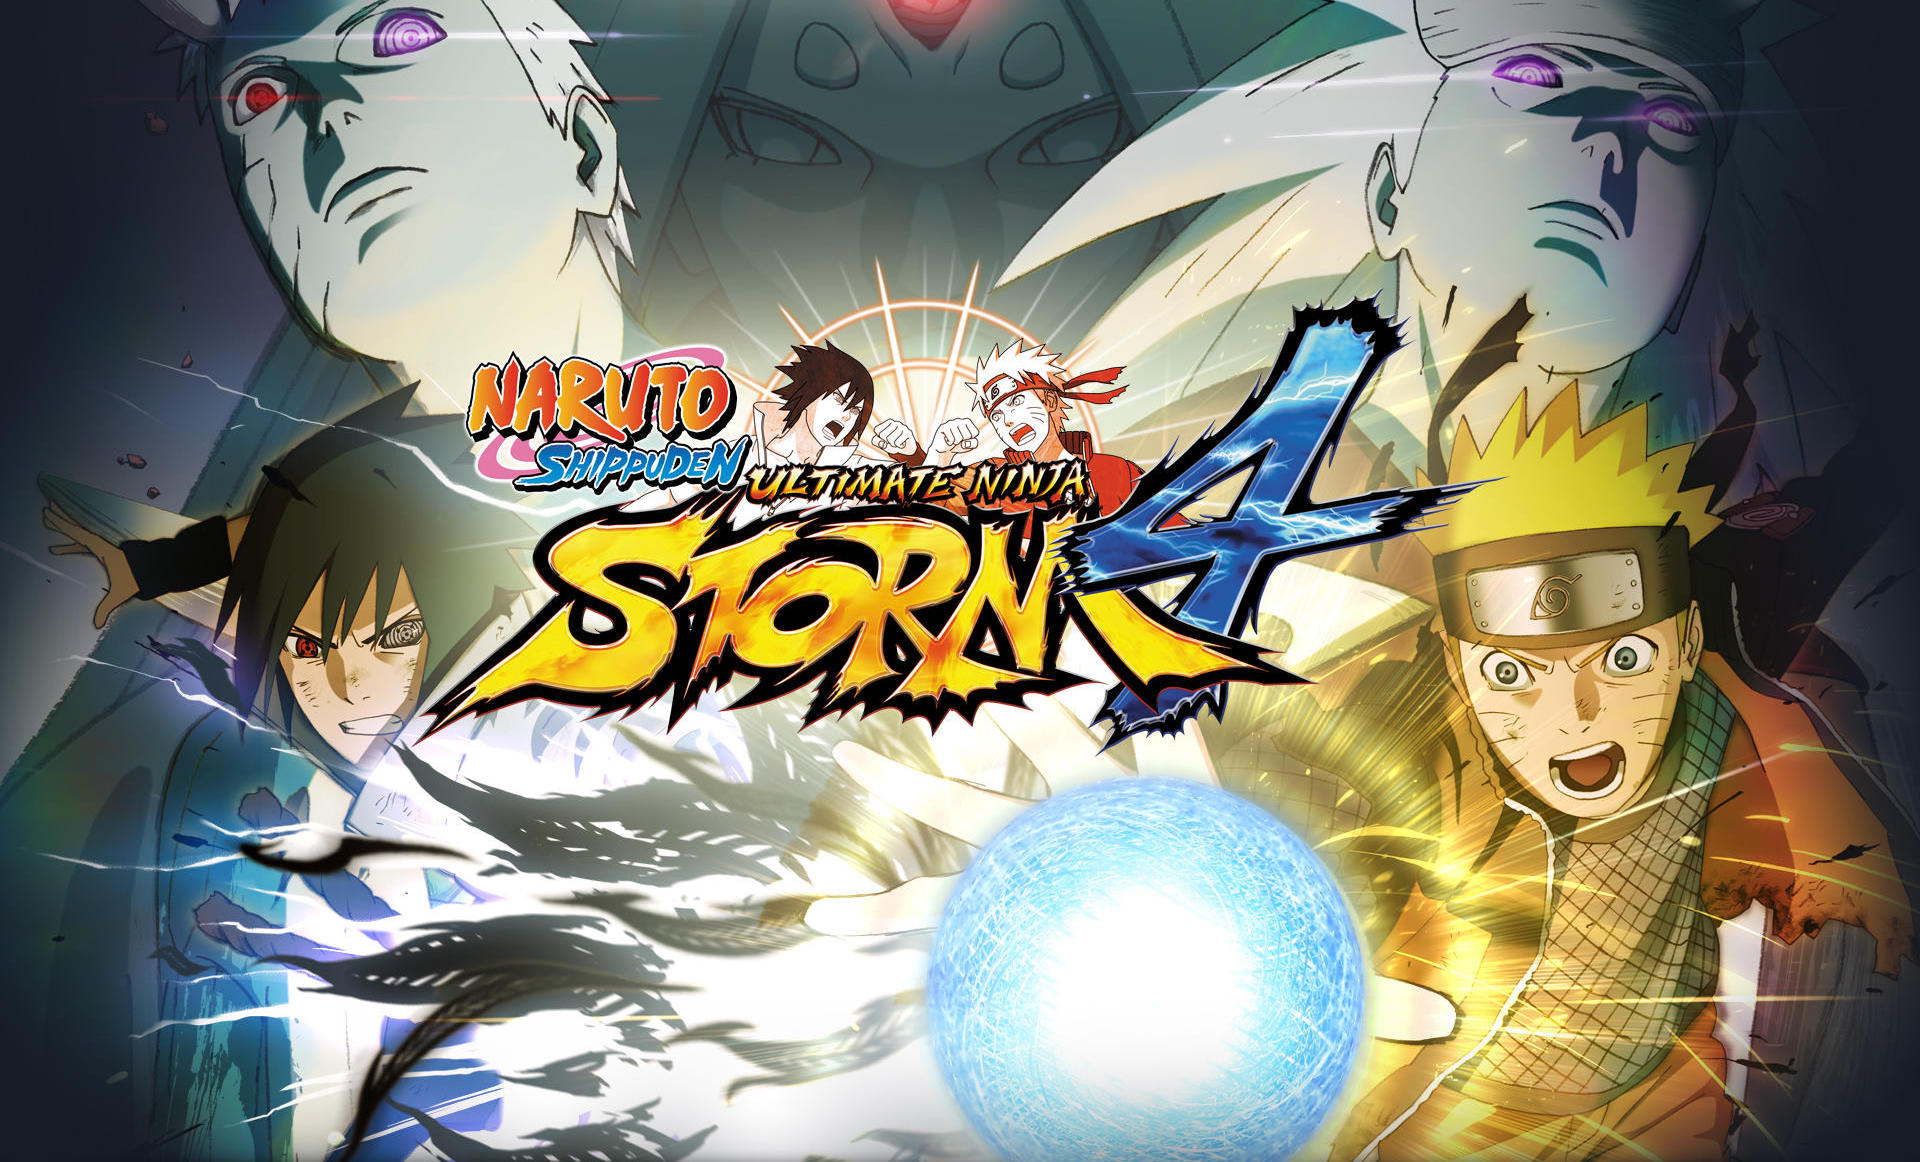 naruto ultimate ninja storm 4 mobile download free